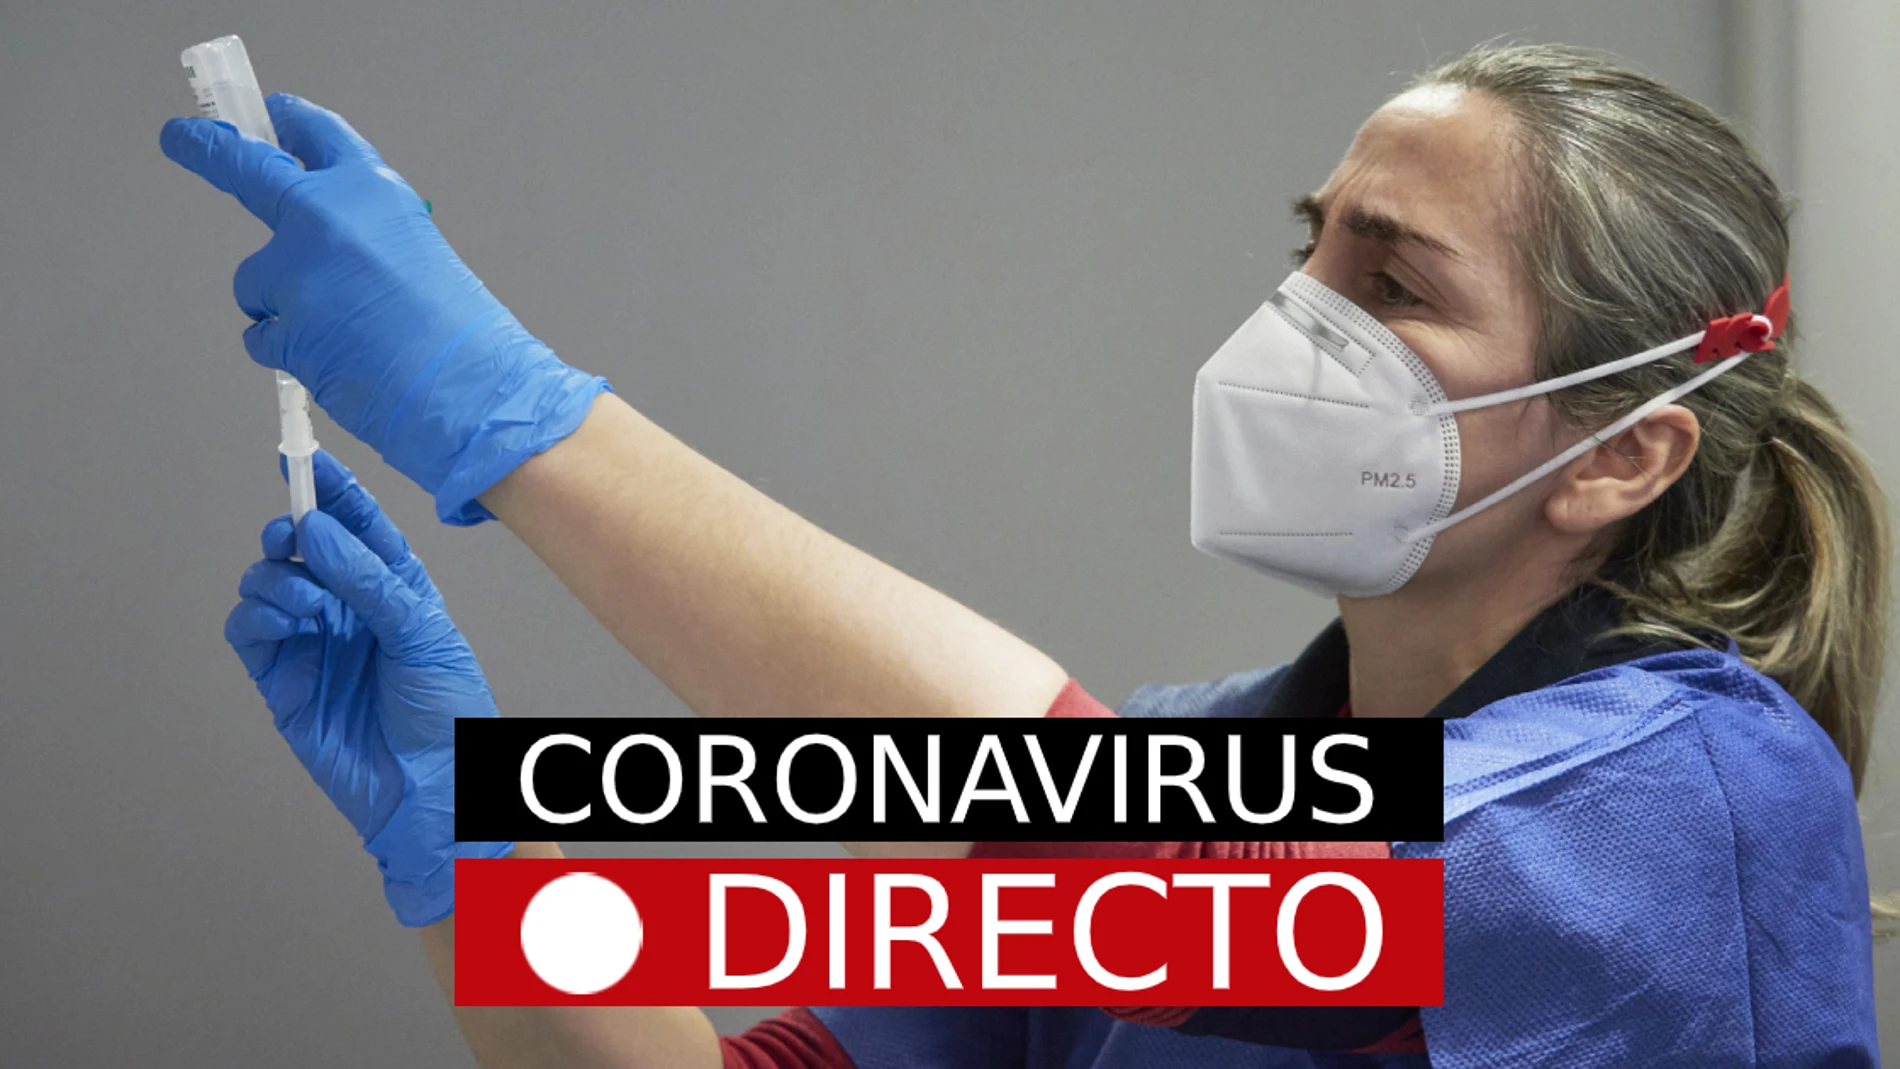 Coronavirus España | Cierres perimetrales, restricciones y noticias de la vacuna del COVID-19, en directo